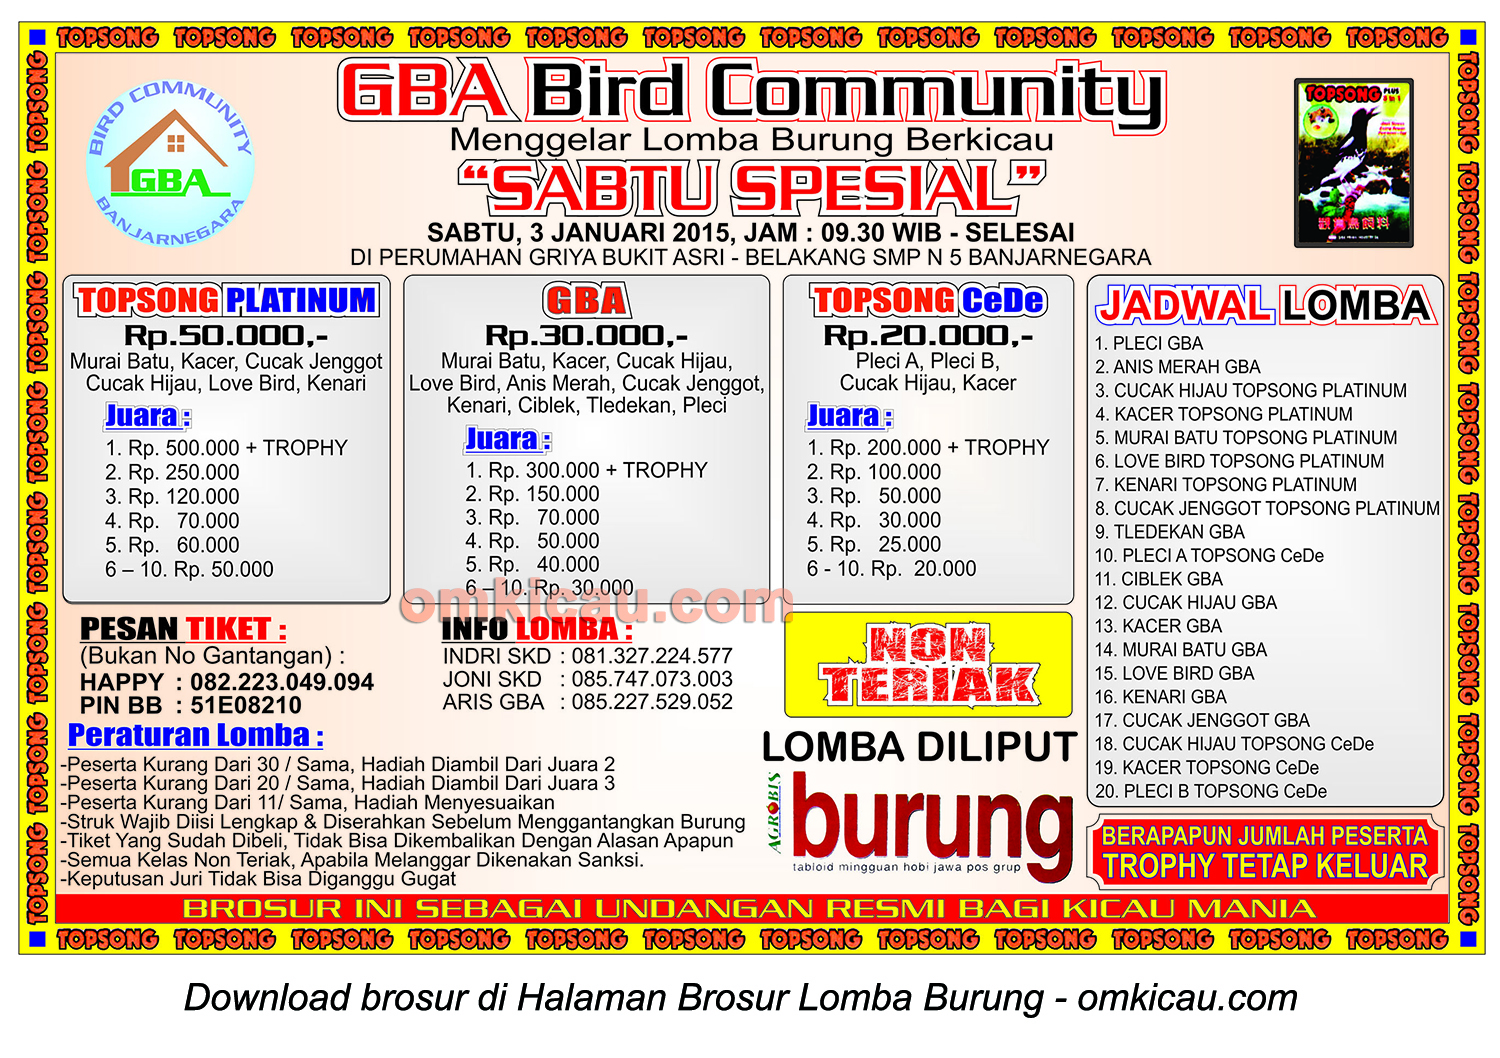 Brosur Lomba Burung Berkicau Sabtu Spesial GBA Community, Banjarnegara, 3 Januari 2015